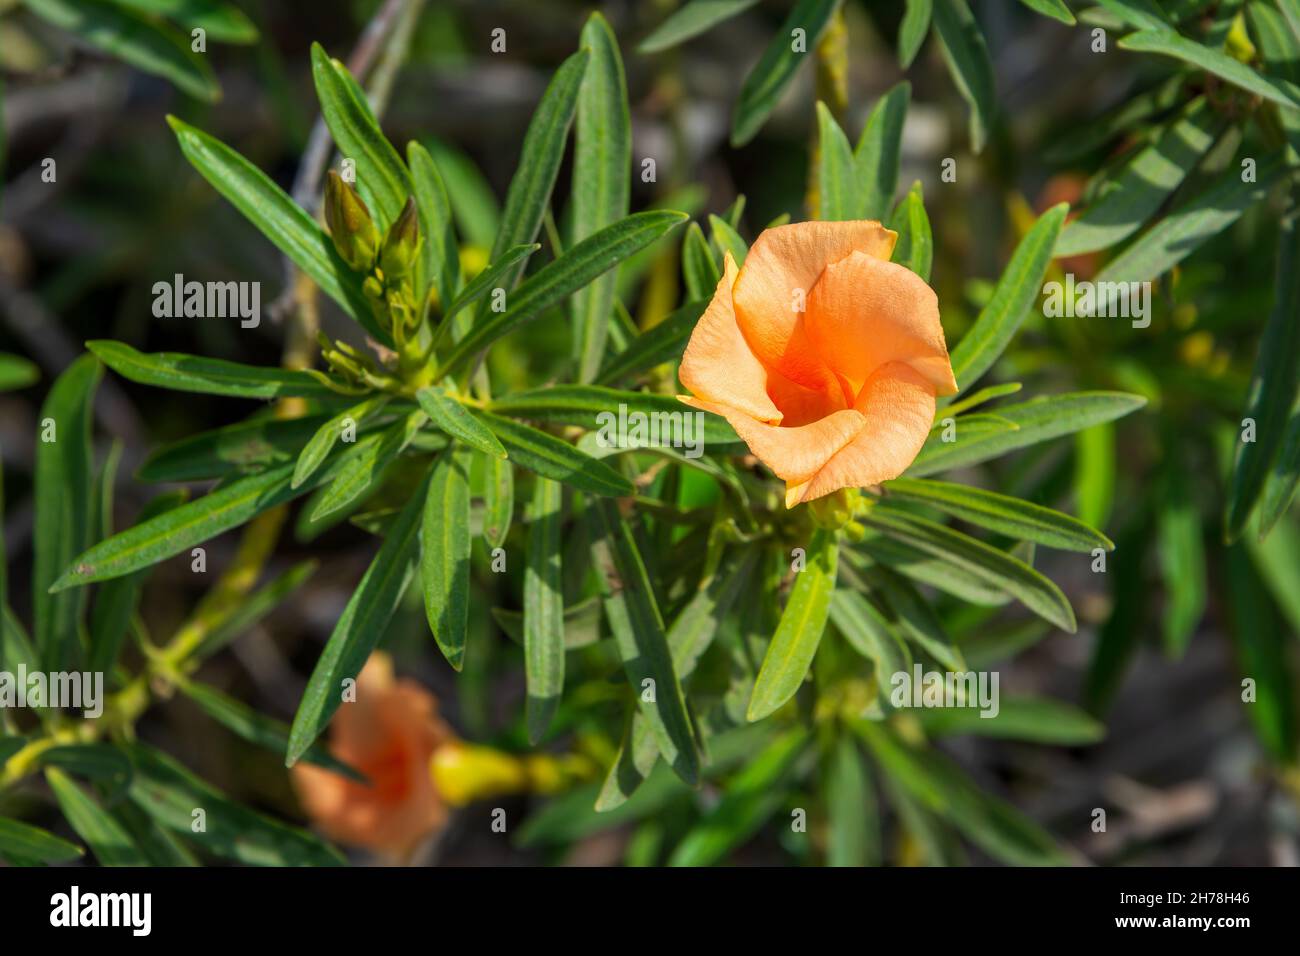 Die schöne Blume von Cascabela thevetia, auch bekannt als Thevetia peruviana oder Fuchsia Oleander, Bienenstille Baum, Luckynut, Orange Oleander, Milchbaum, Stockfoto